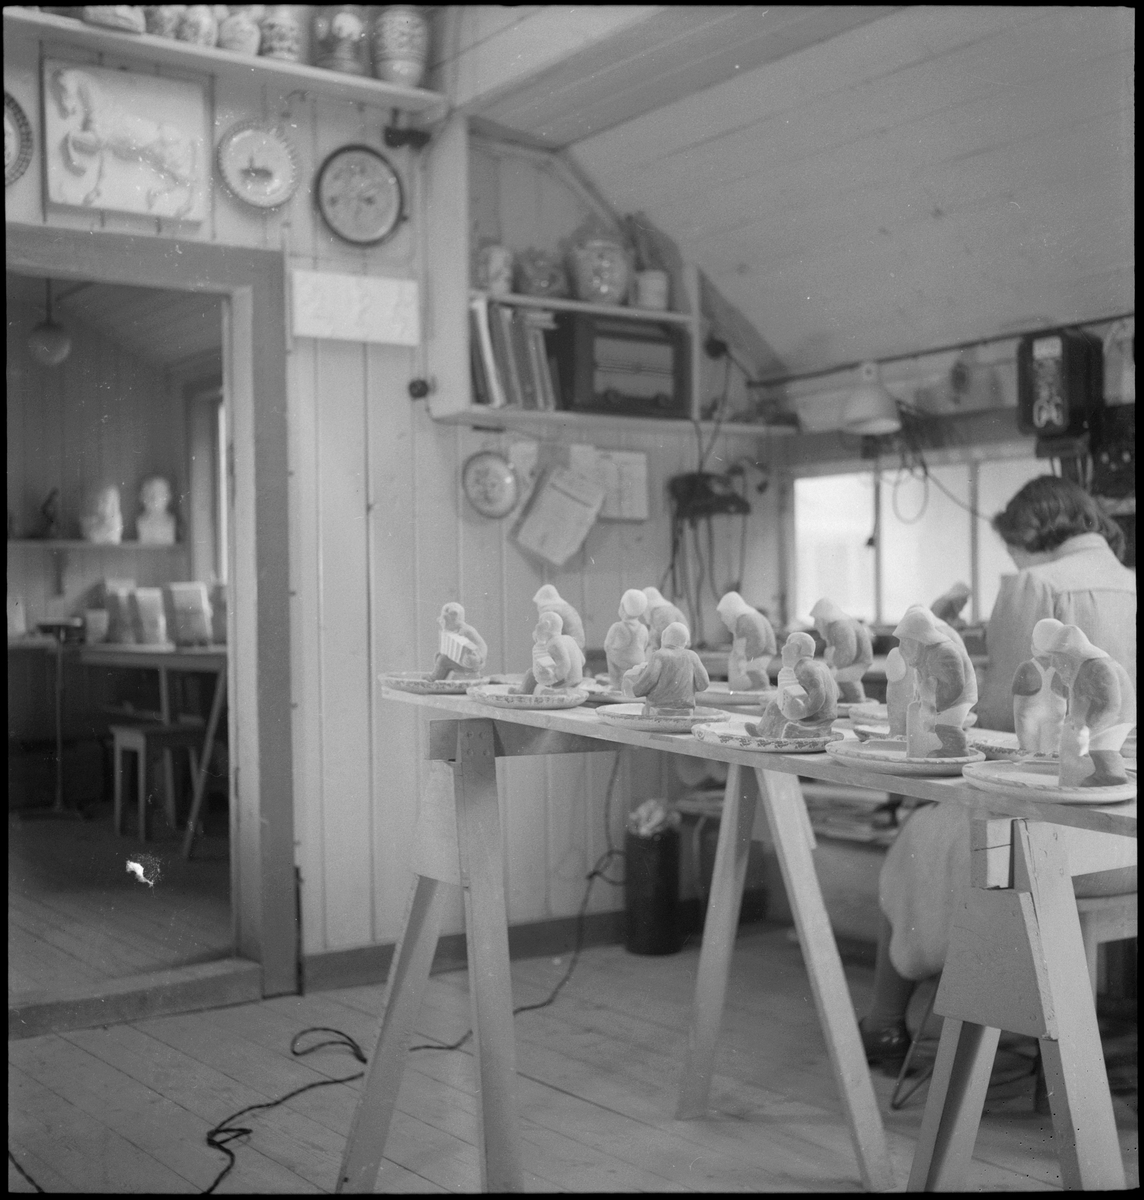 Keramiker Thorvald Olsen og en kvinne maler keramiske produkter i Olsens verksted. På bordet er det flere keramikkfigurer.